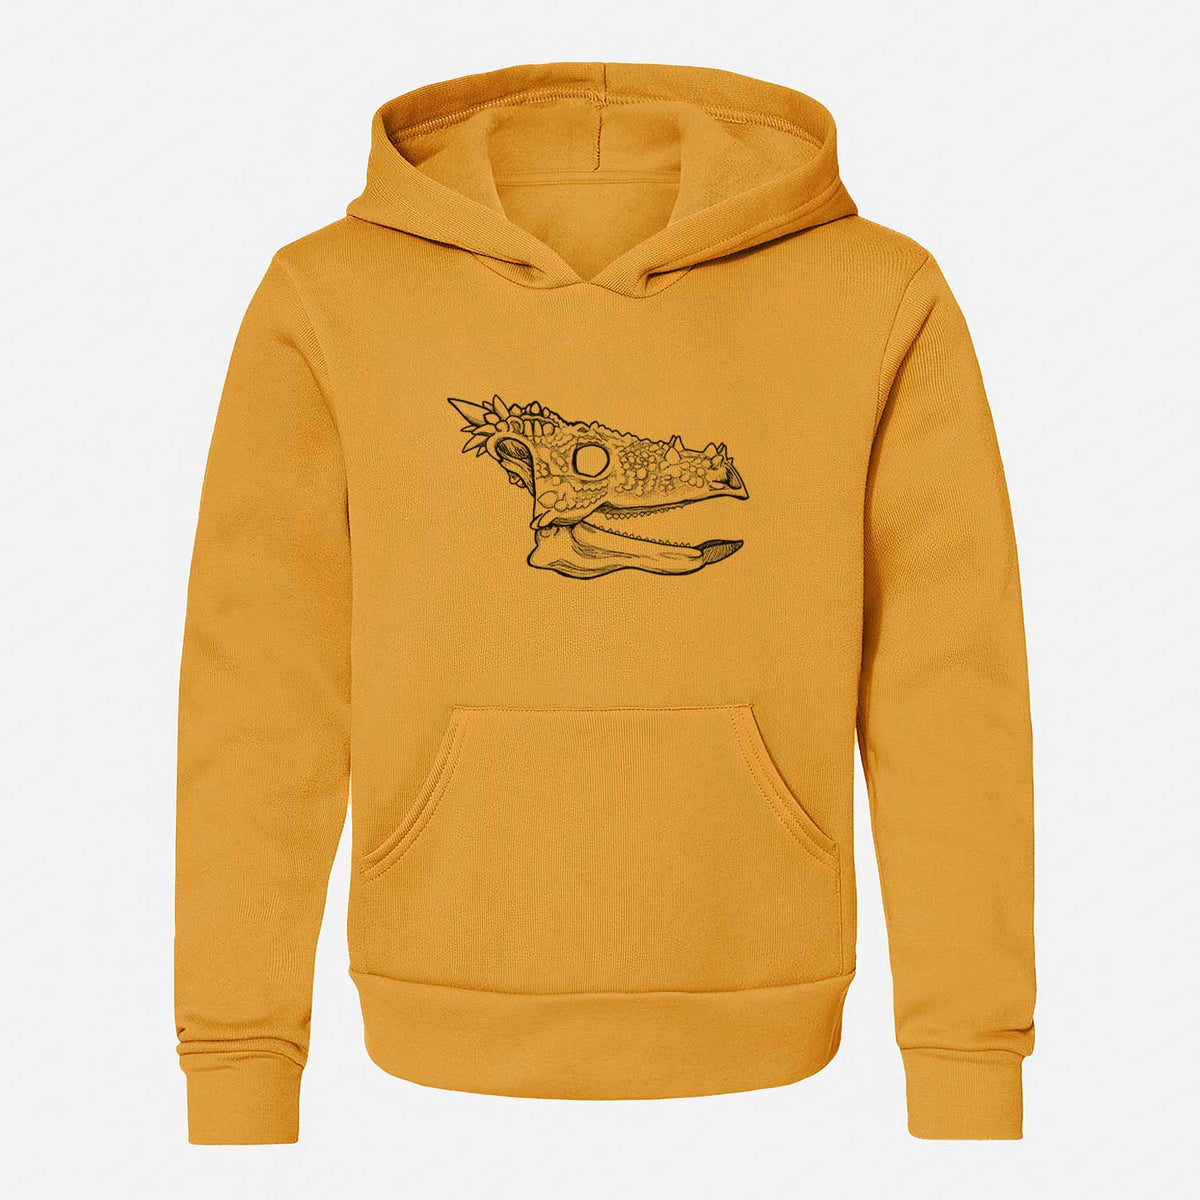 Dracorex Skull - Youth Hoodie Sweatshirt